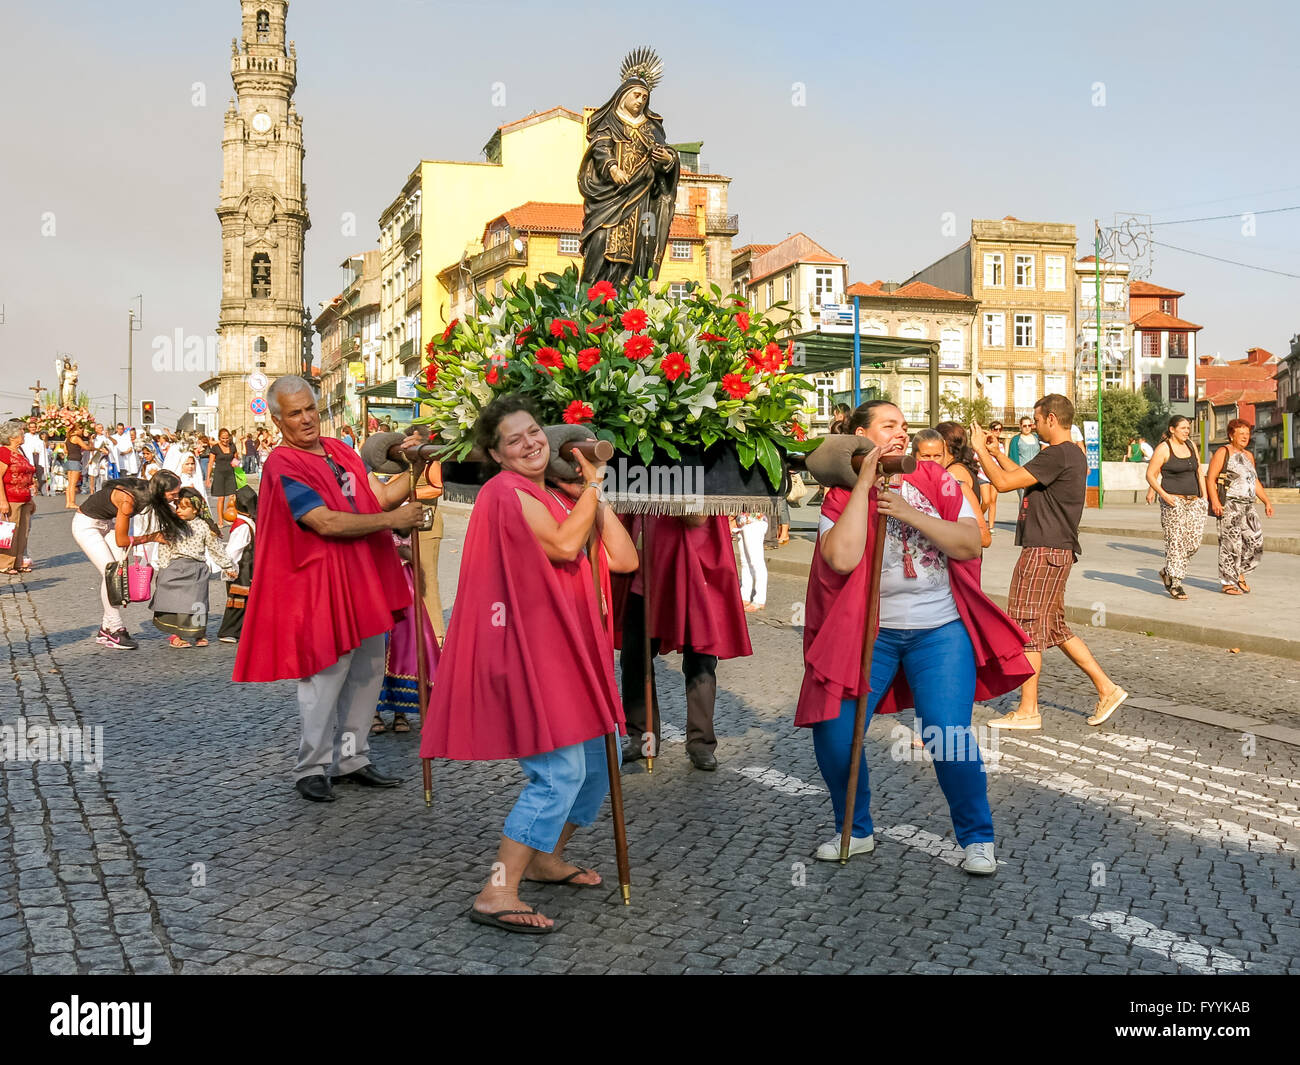 La gente en procesión en la ciudad de Oporto, en Portugal Foto de stock